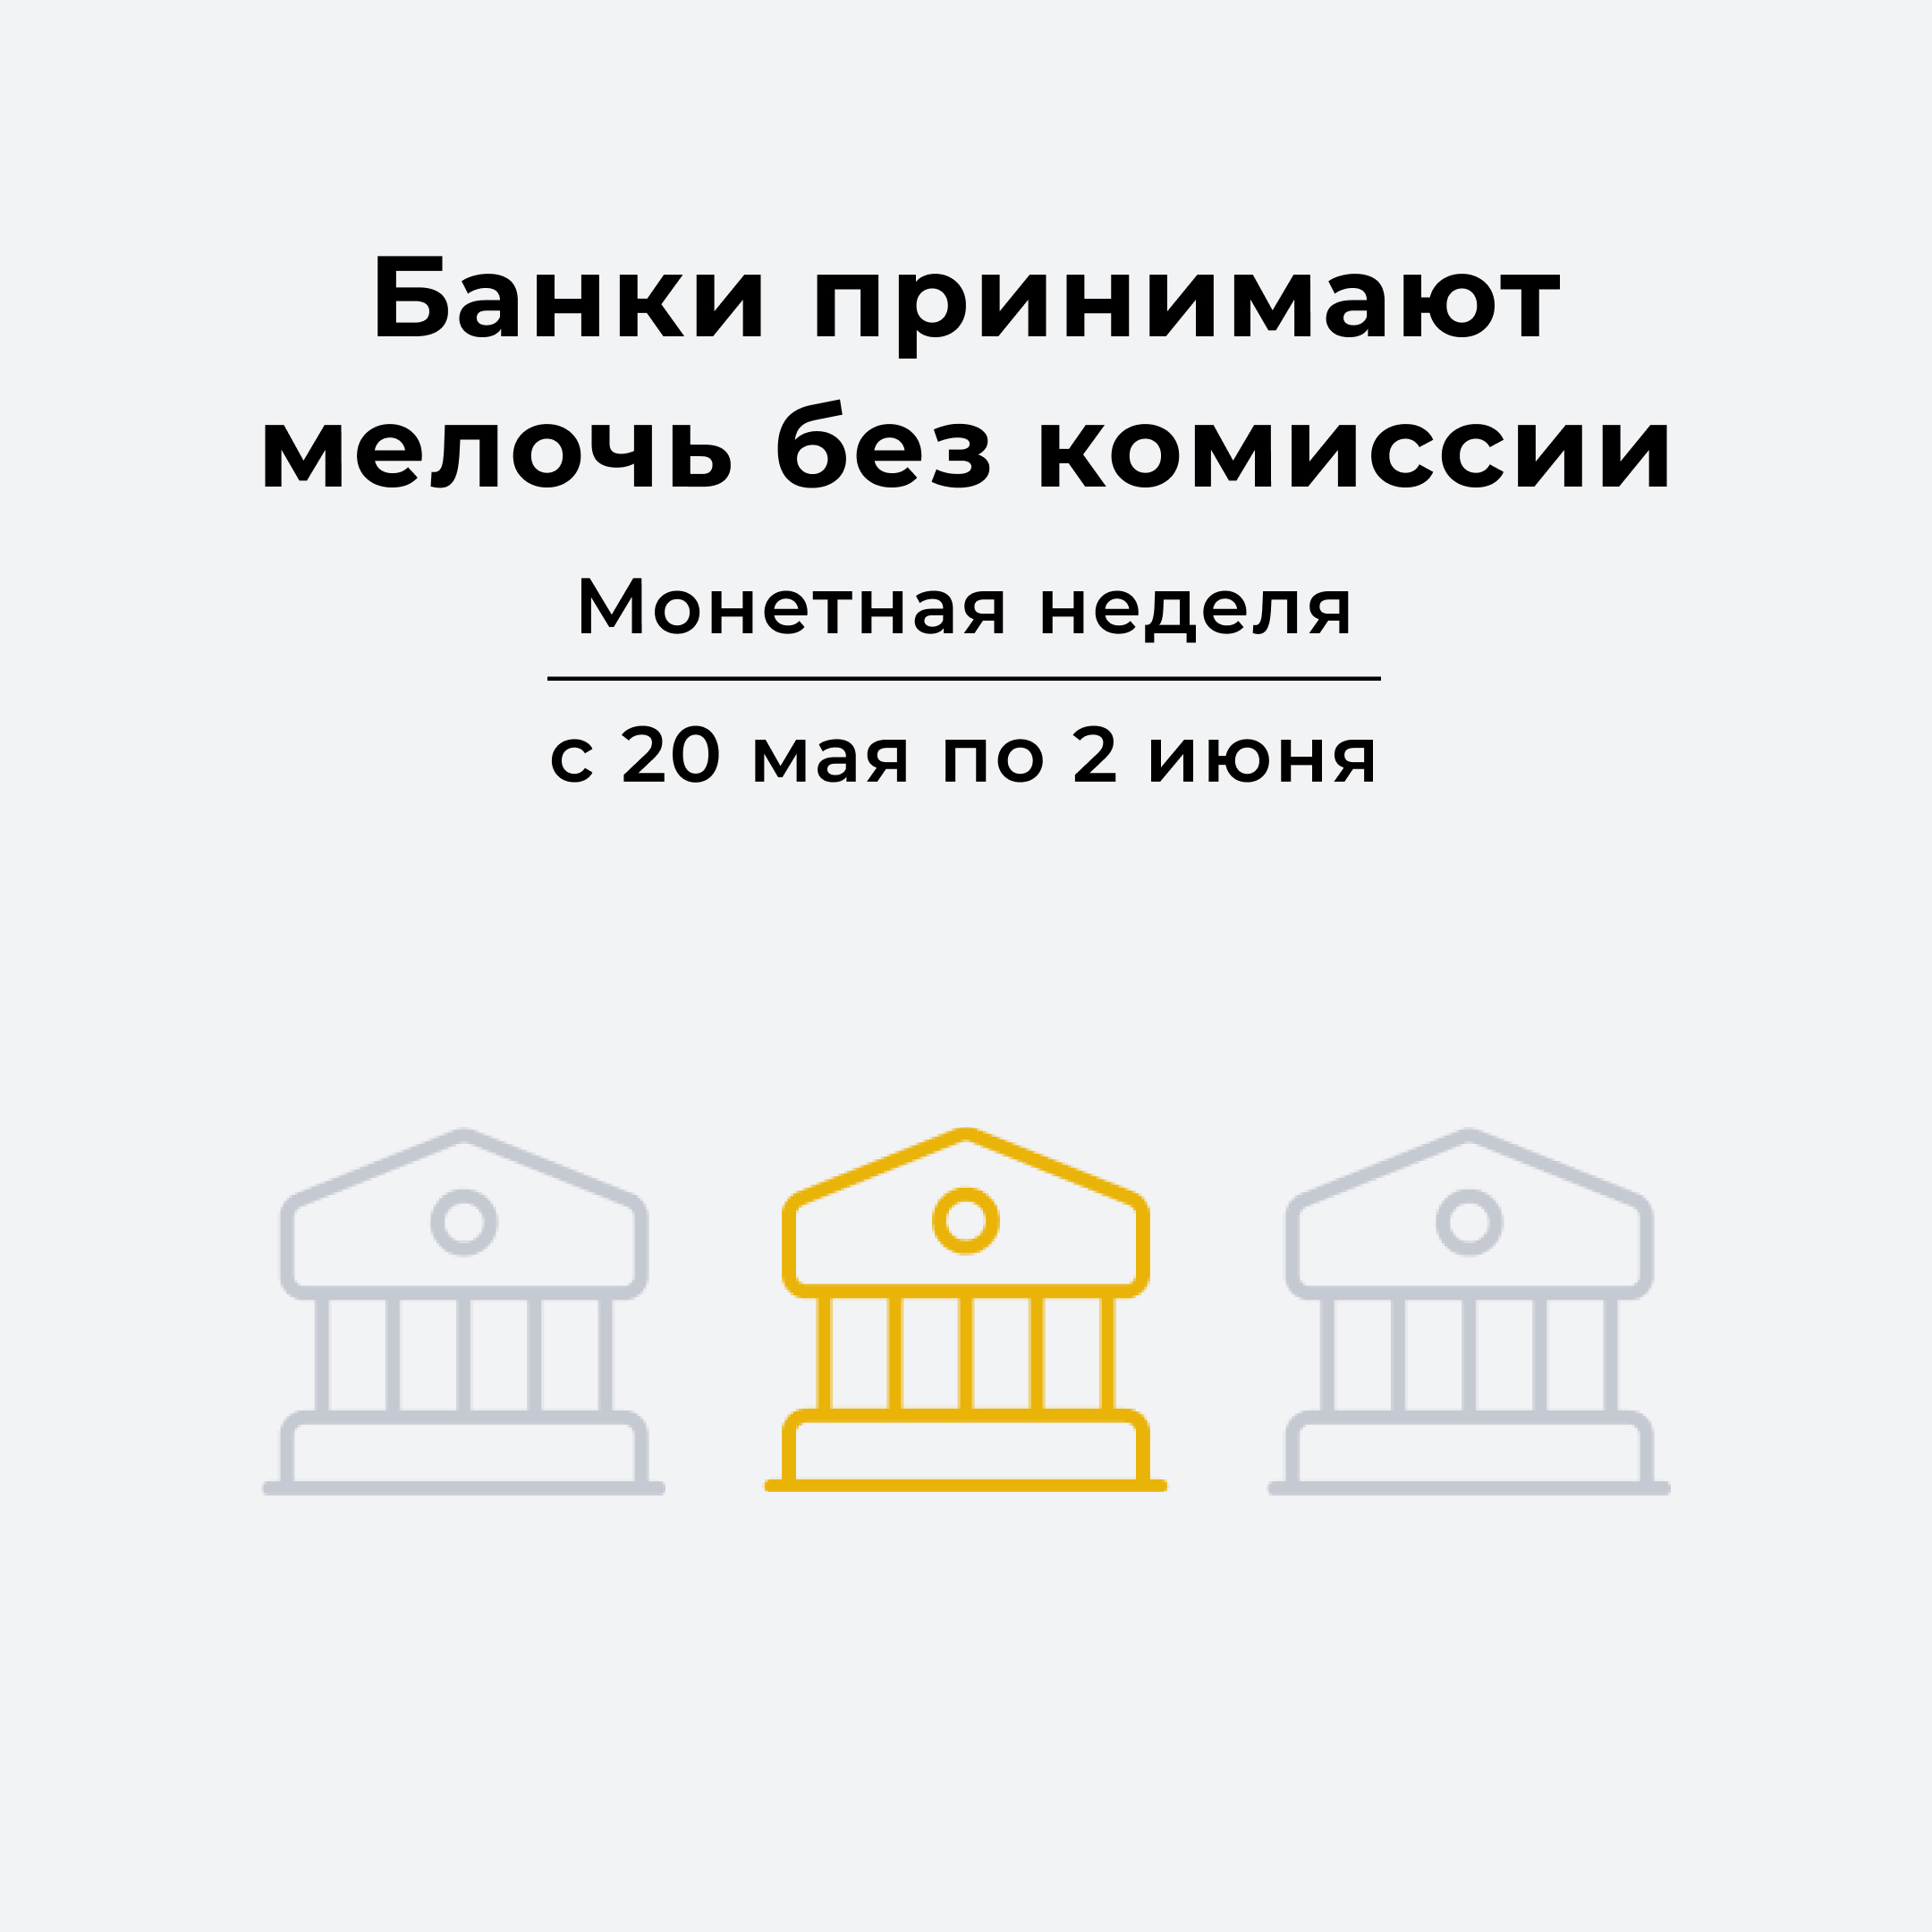 «Монетная неделя» возвращается: жители Ленинградской области вновь могут принять участие в акции